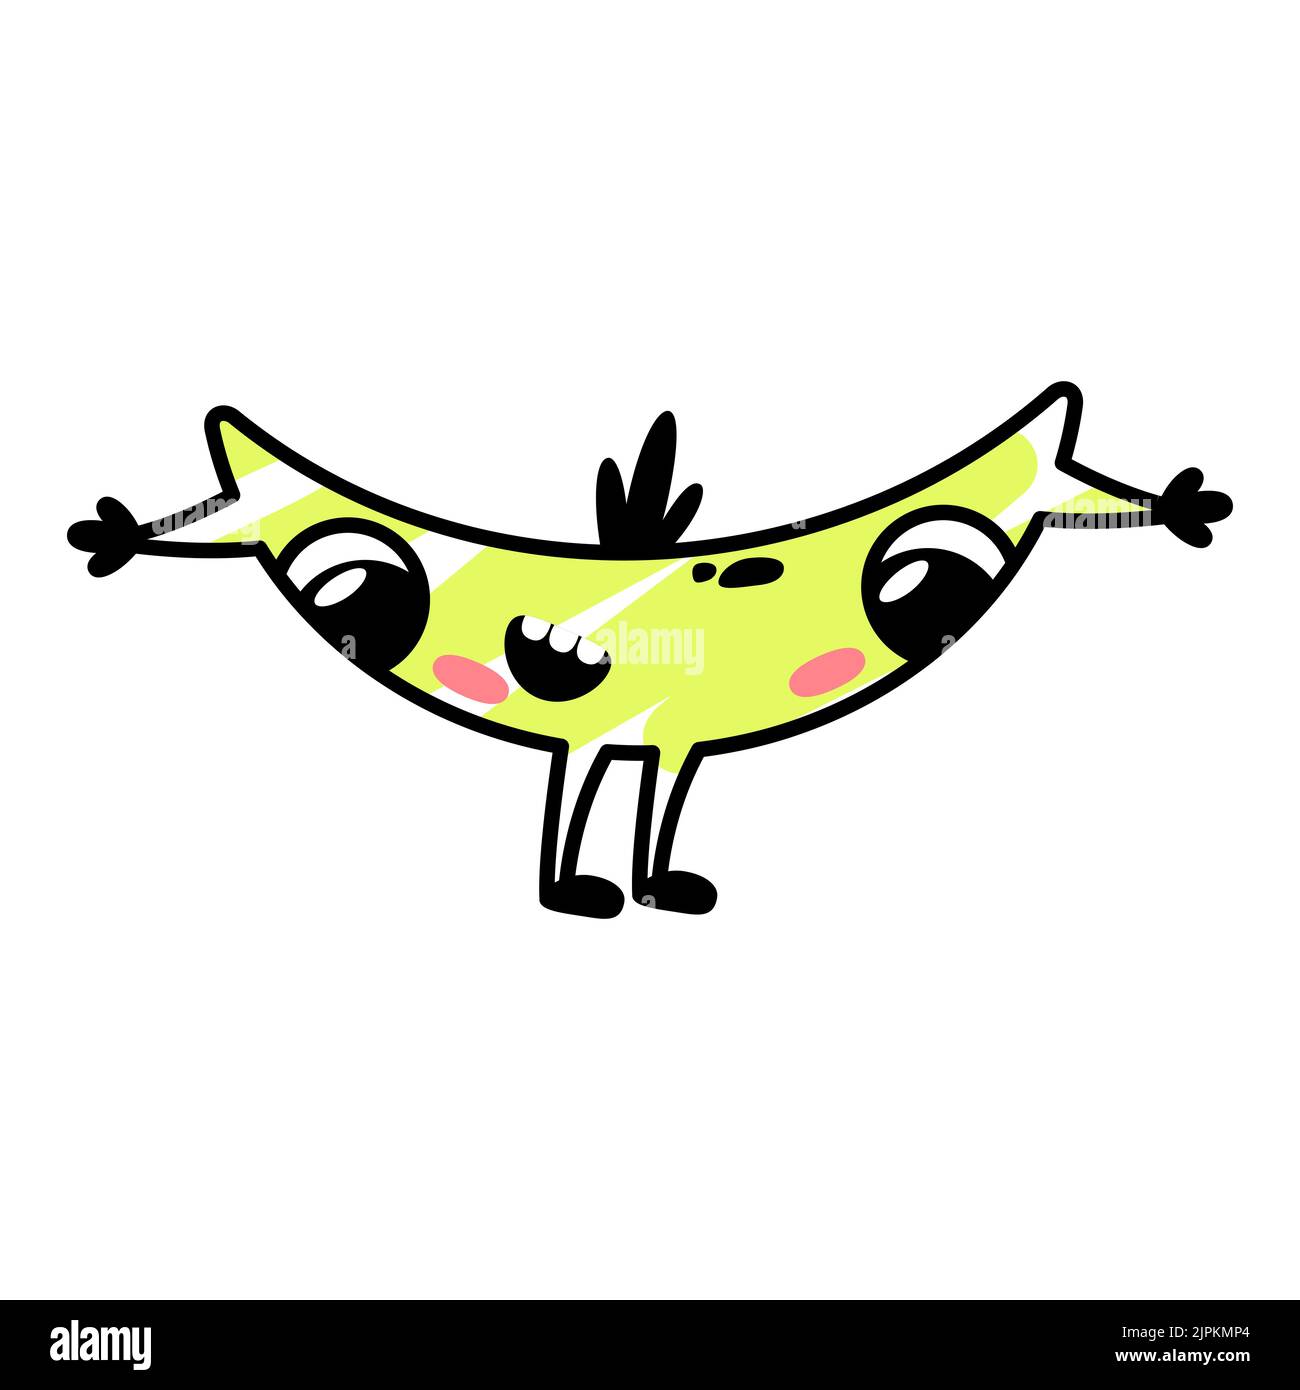 Lustige Cartoon gelbe Monster lachen. Eine fiktive Figur in Form einer Banane. Niedliche Alien-Ikone im Doodle-Stil. Umarmende Maskottchen für die Marke. Ein cooler Aufdruck für Kinderprodukte. Stock Vektor